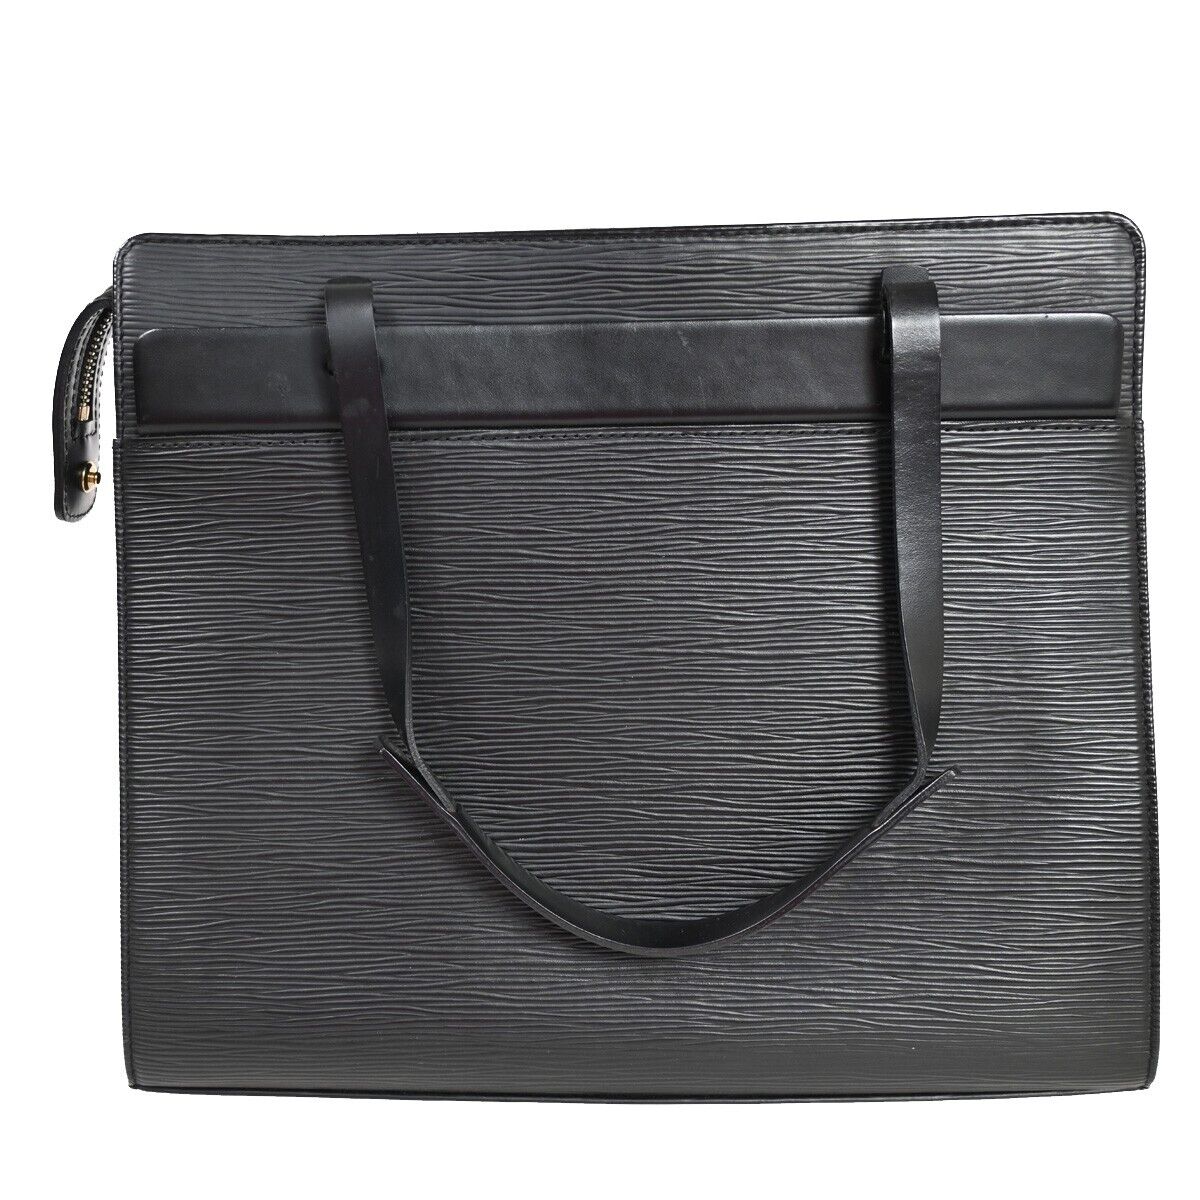 Louis Vuitton Croisette Black Leather Handbag (Pre-Owned)